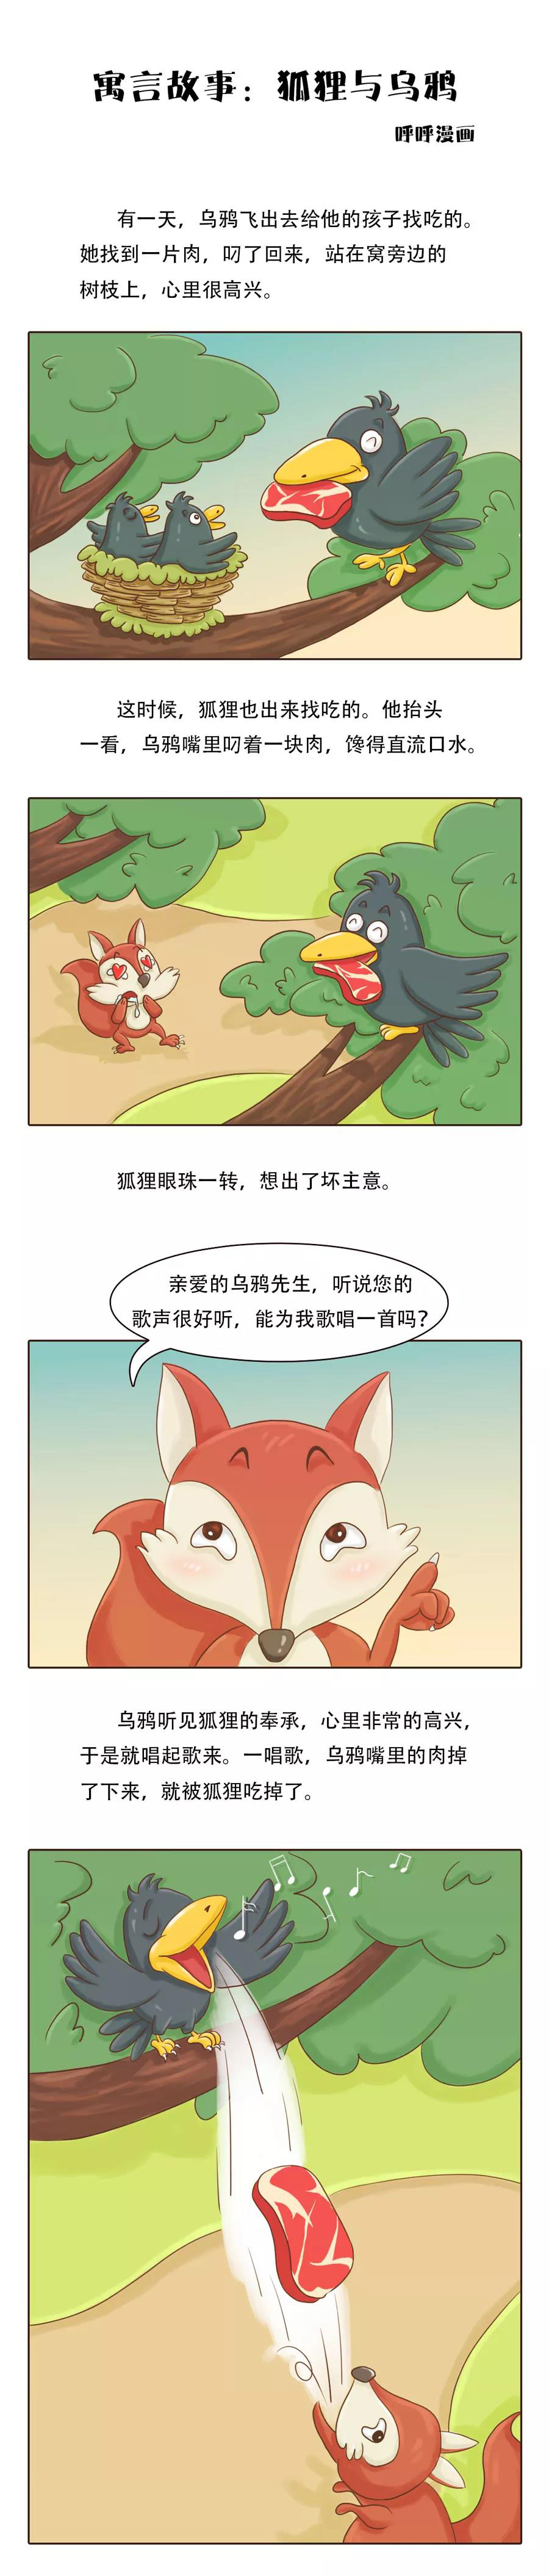 狐狸和乌鸦连环画4张图片